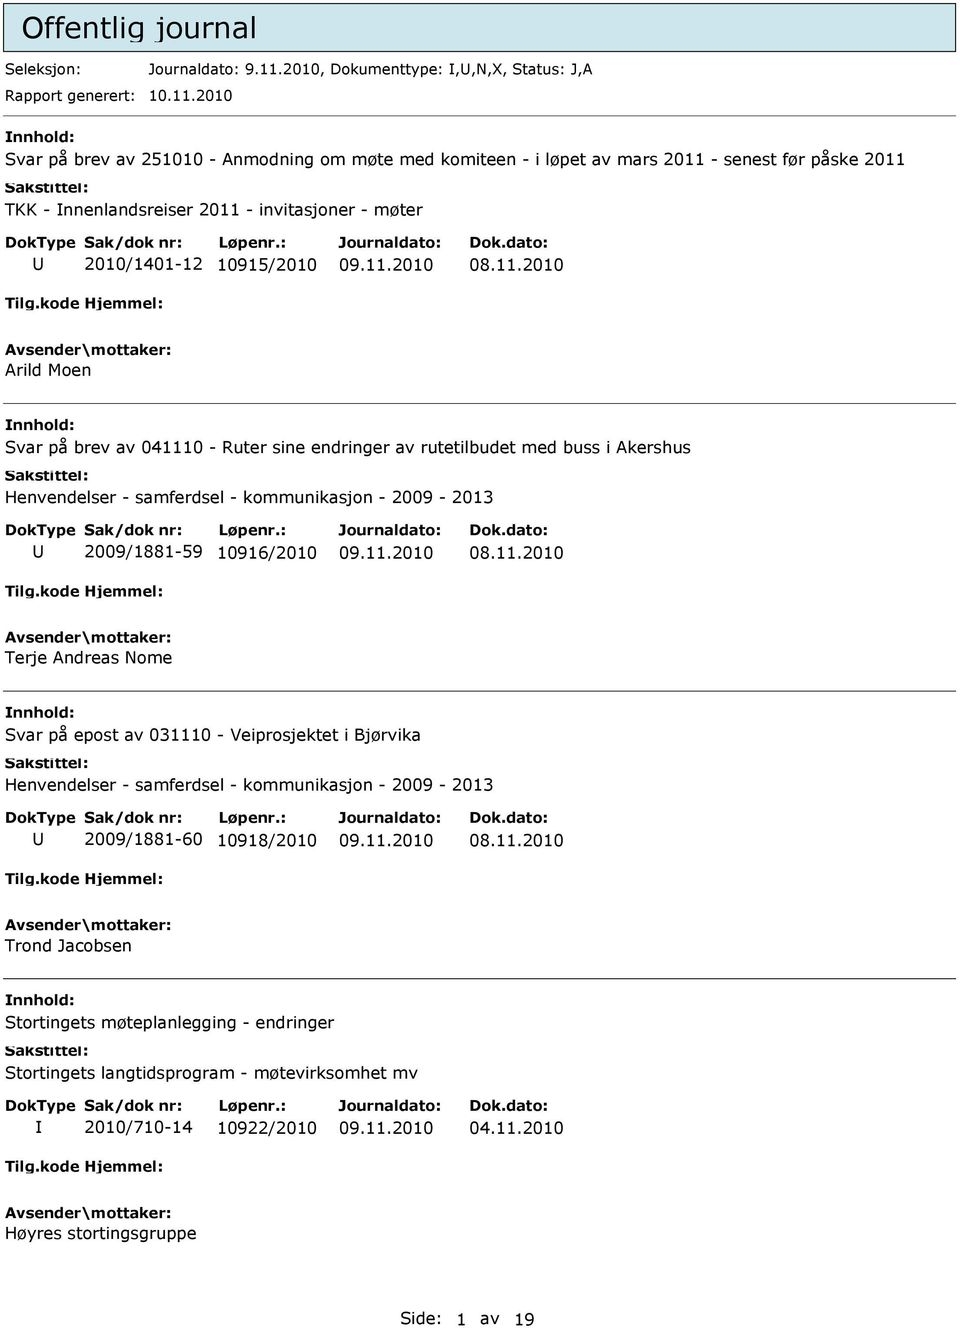 2010 Svar på brev av 251010 - Anmodning om møte med komiteen - i løpet av mars 2011 - senest før påske 2011 TKK - nnenlandsreiser 2011 - invitasjoner - møter 2010/1401-12 10915/2010 Arild Moen